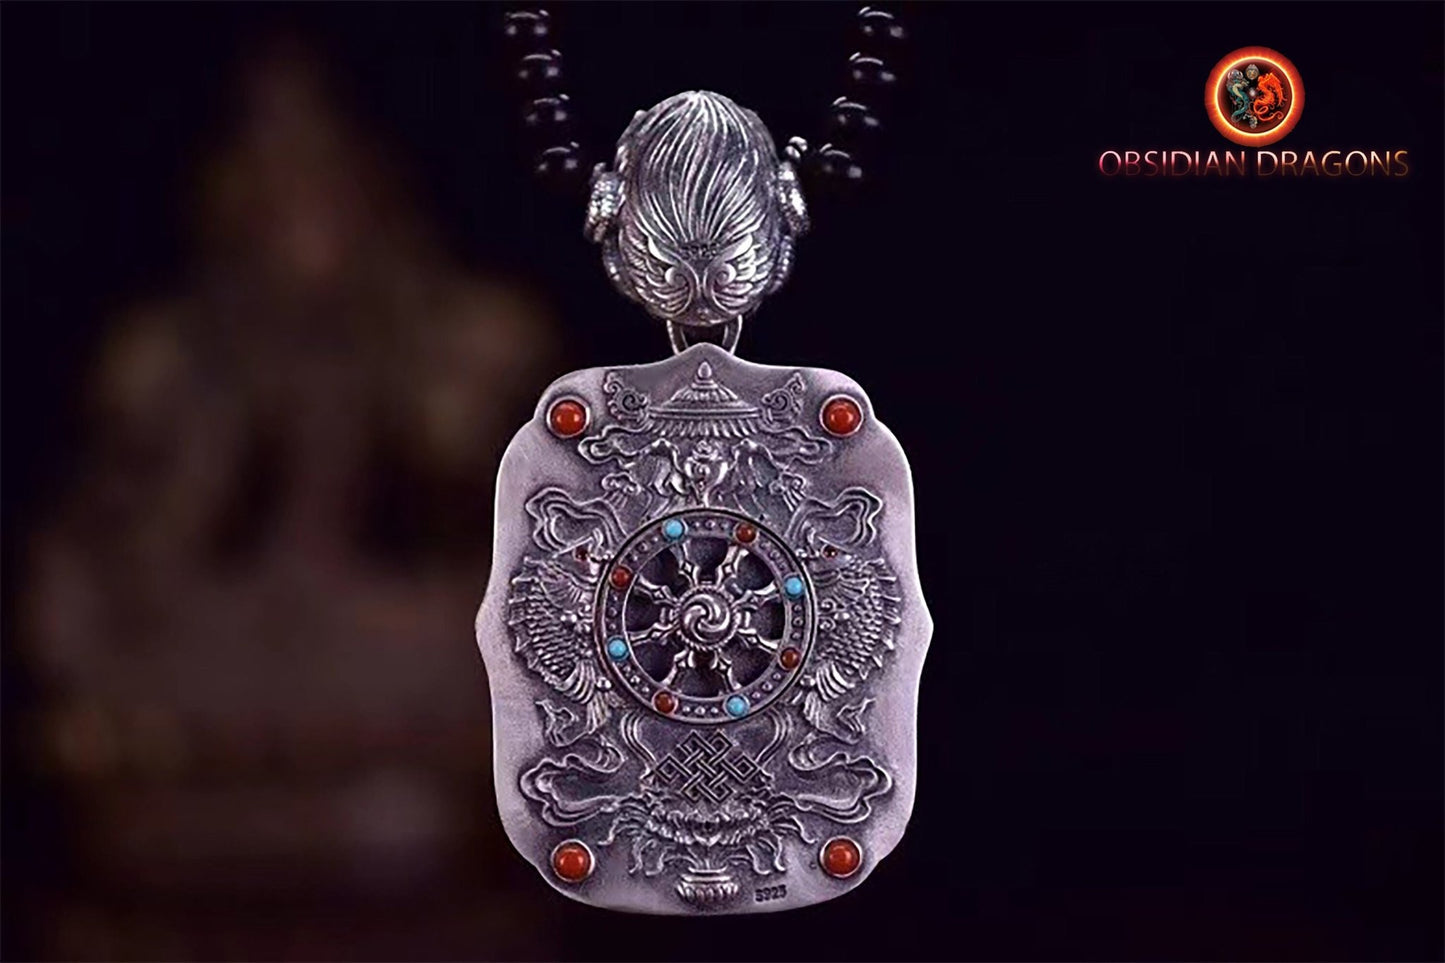 Pendentif bouddha. Jambhala, déité de la richesse. Amulette de protection du bouddhisme vajrayana esoterique tibétain. représentation de Garuda sur la beliere. - obsidian dragon